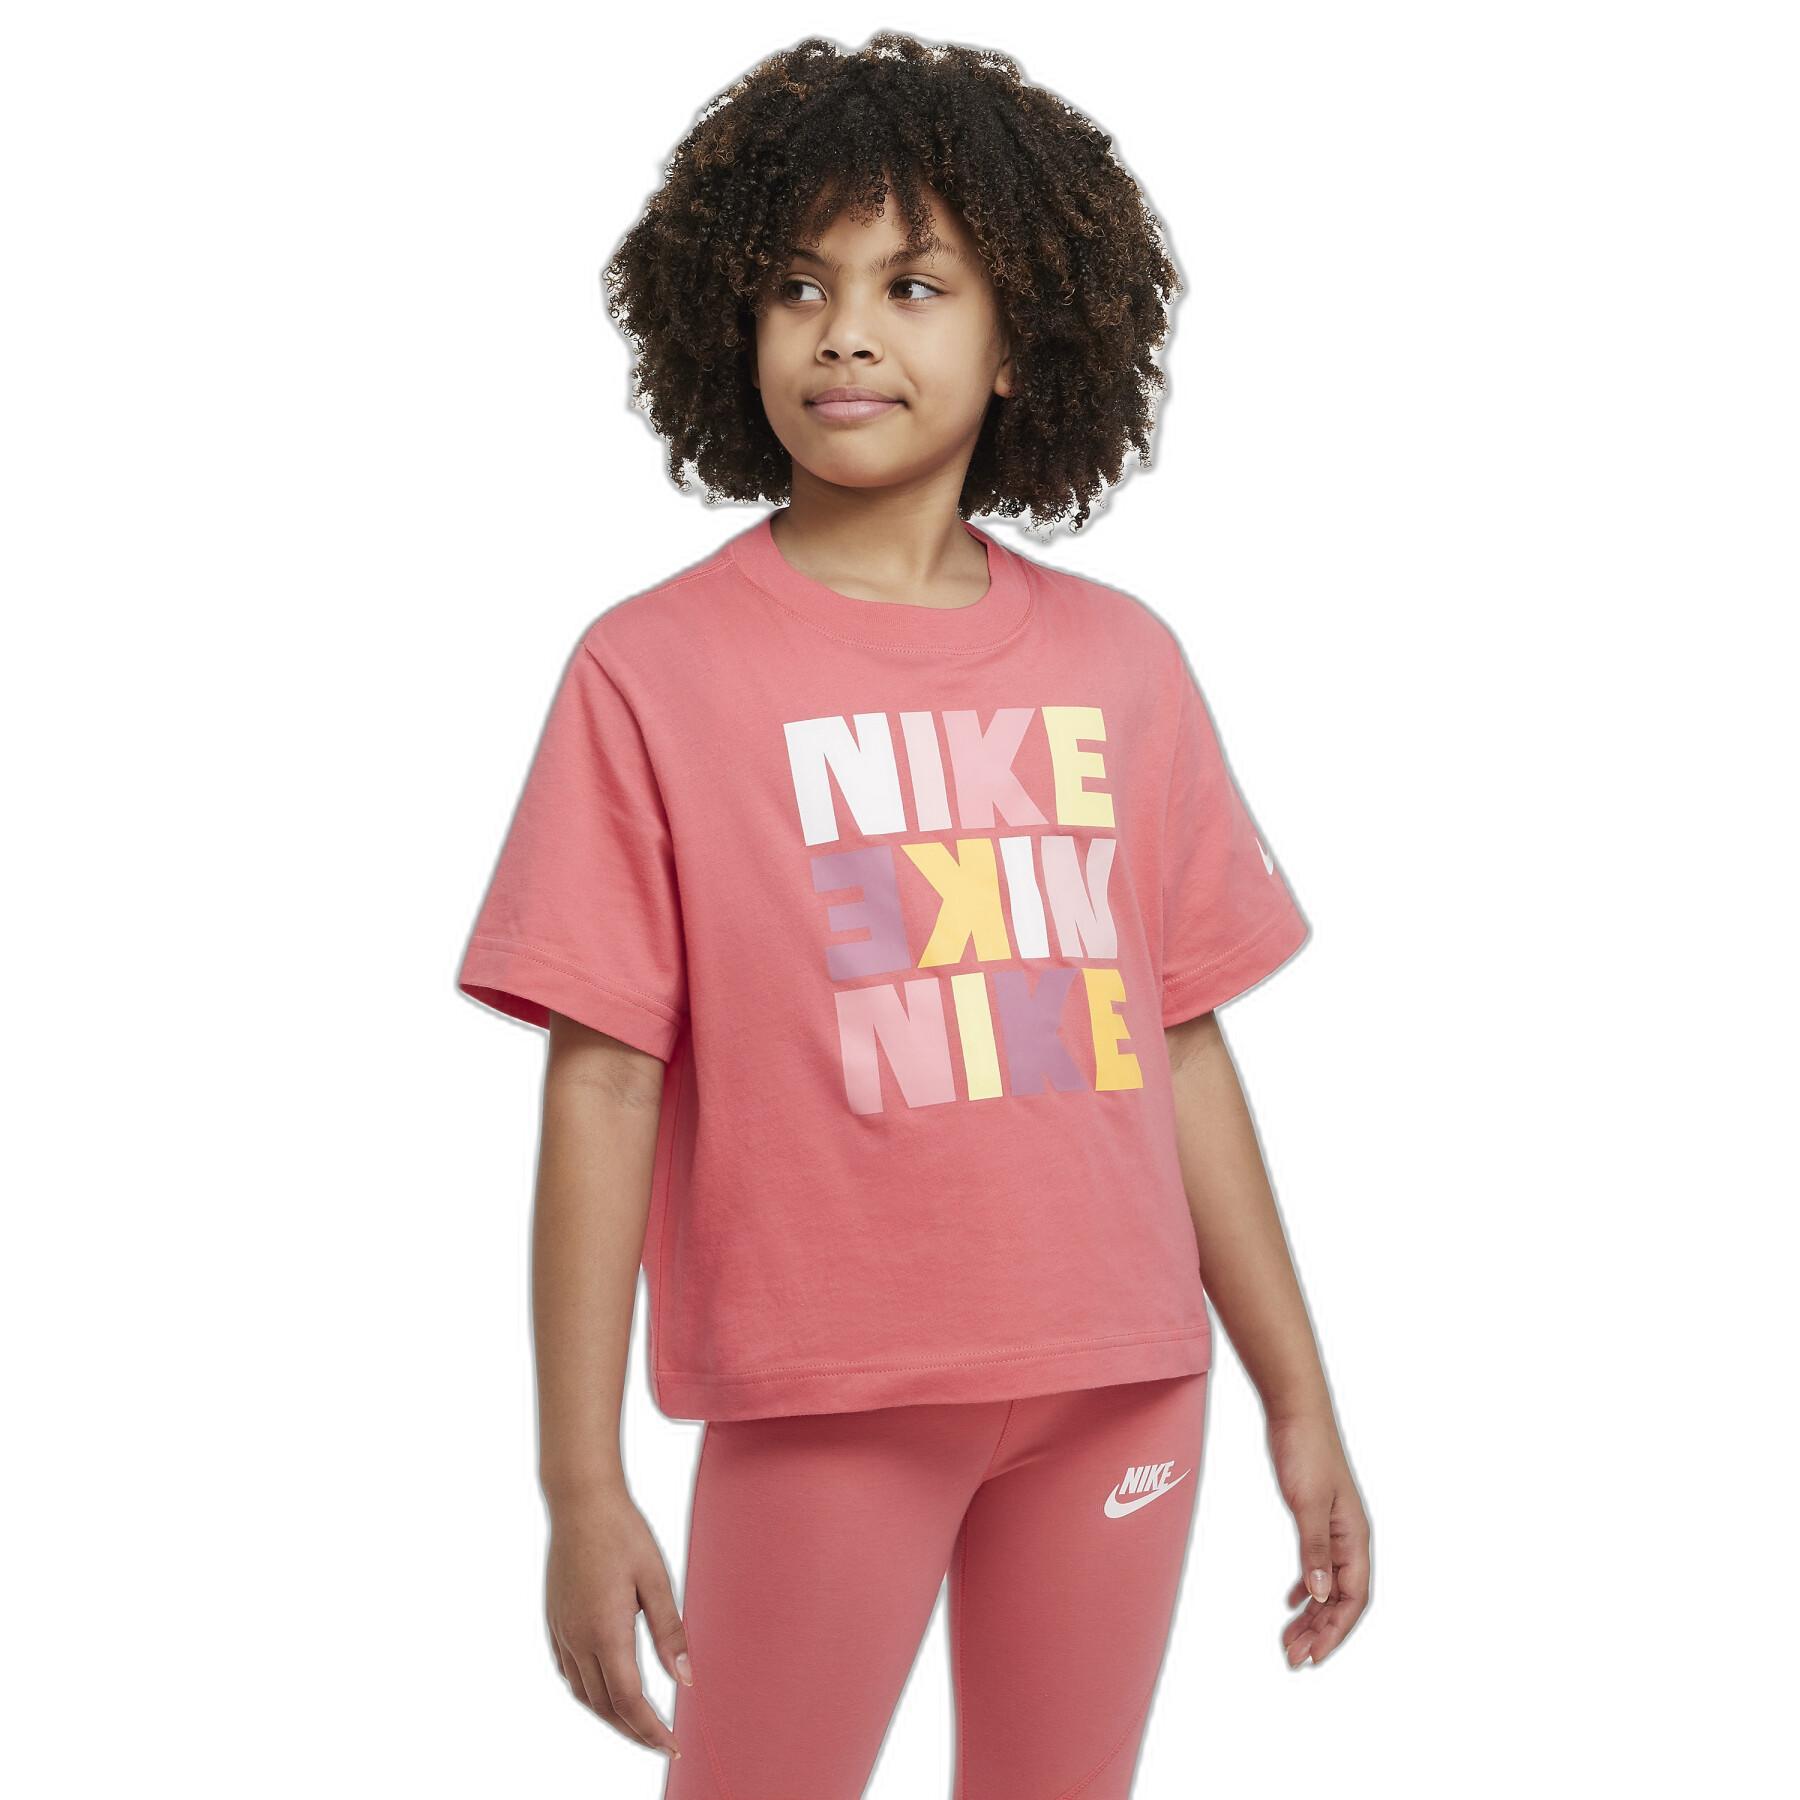 T-shirt för flickor Nike Boxy Print